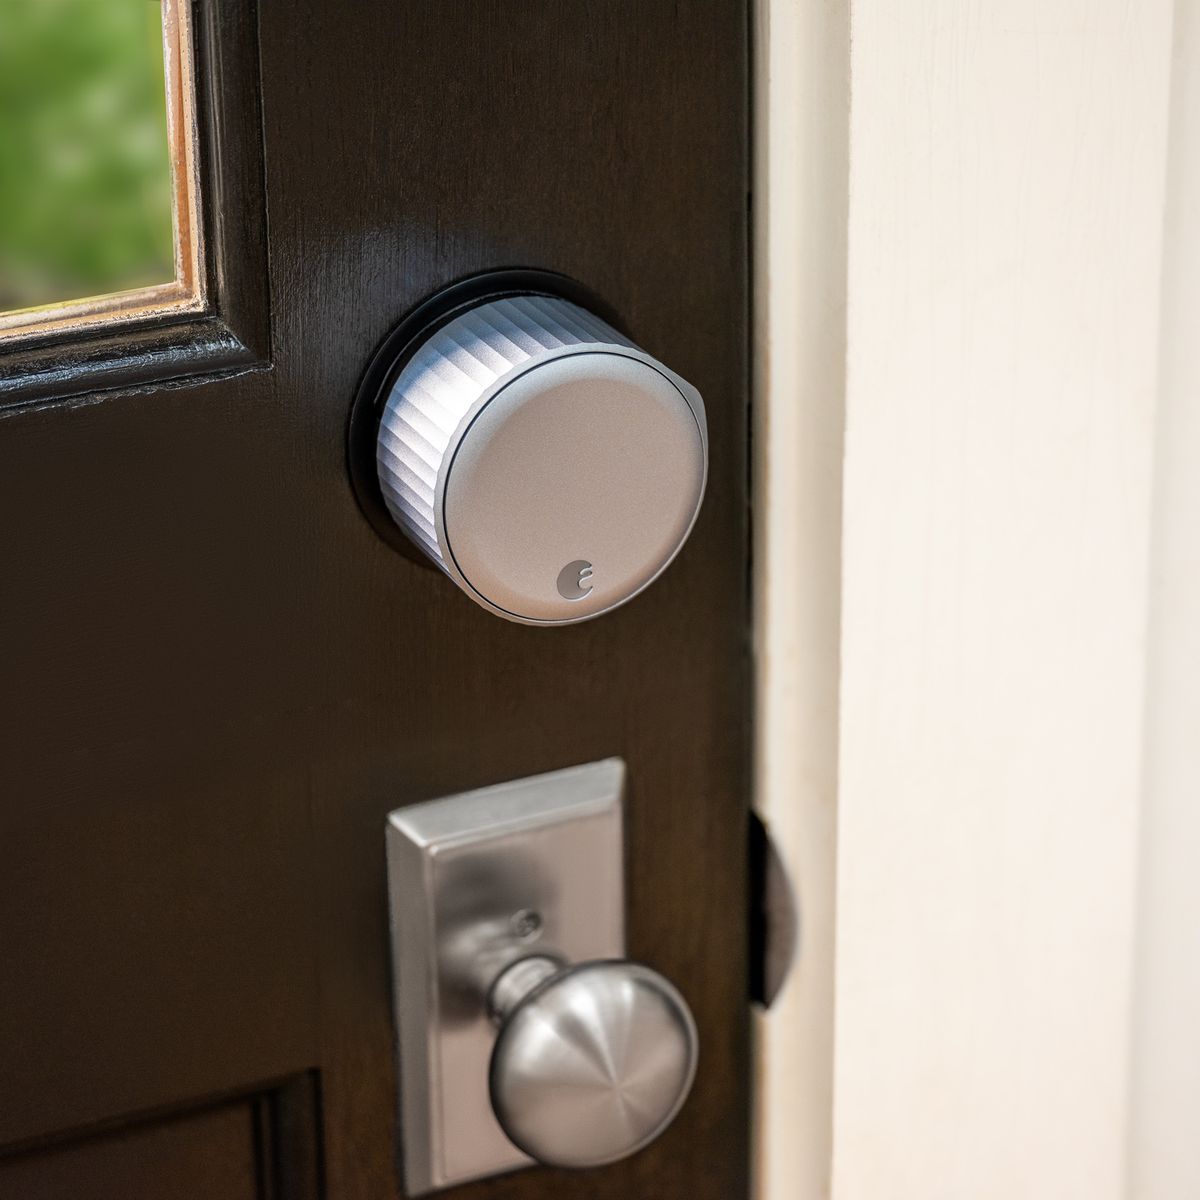 Augustus Wi-Fi smart lock geïnstalleerd op bruine deur